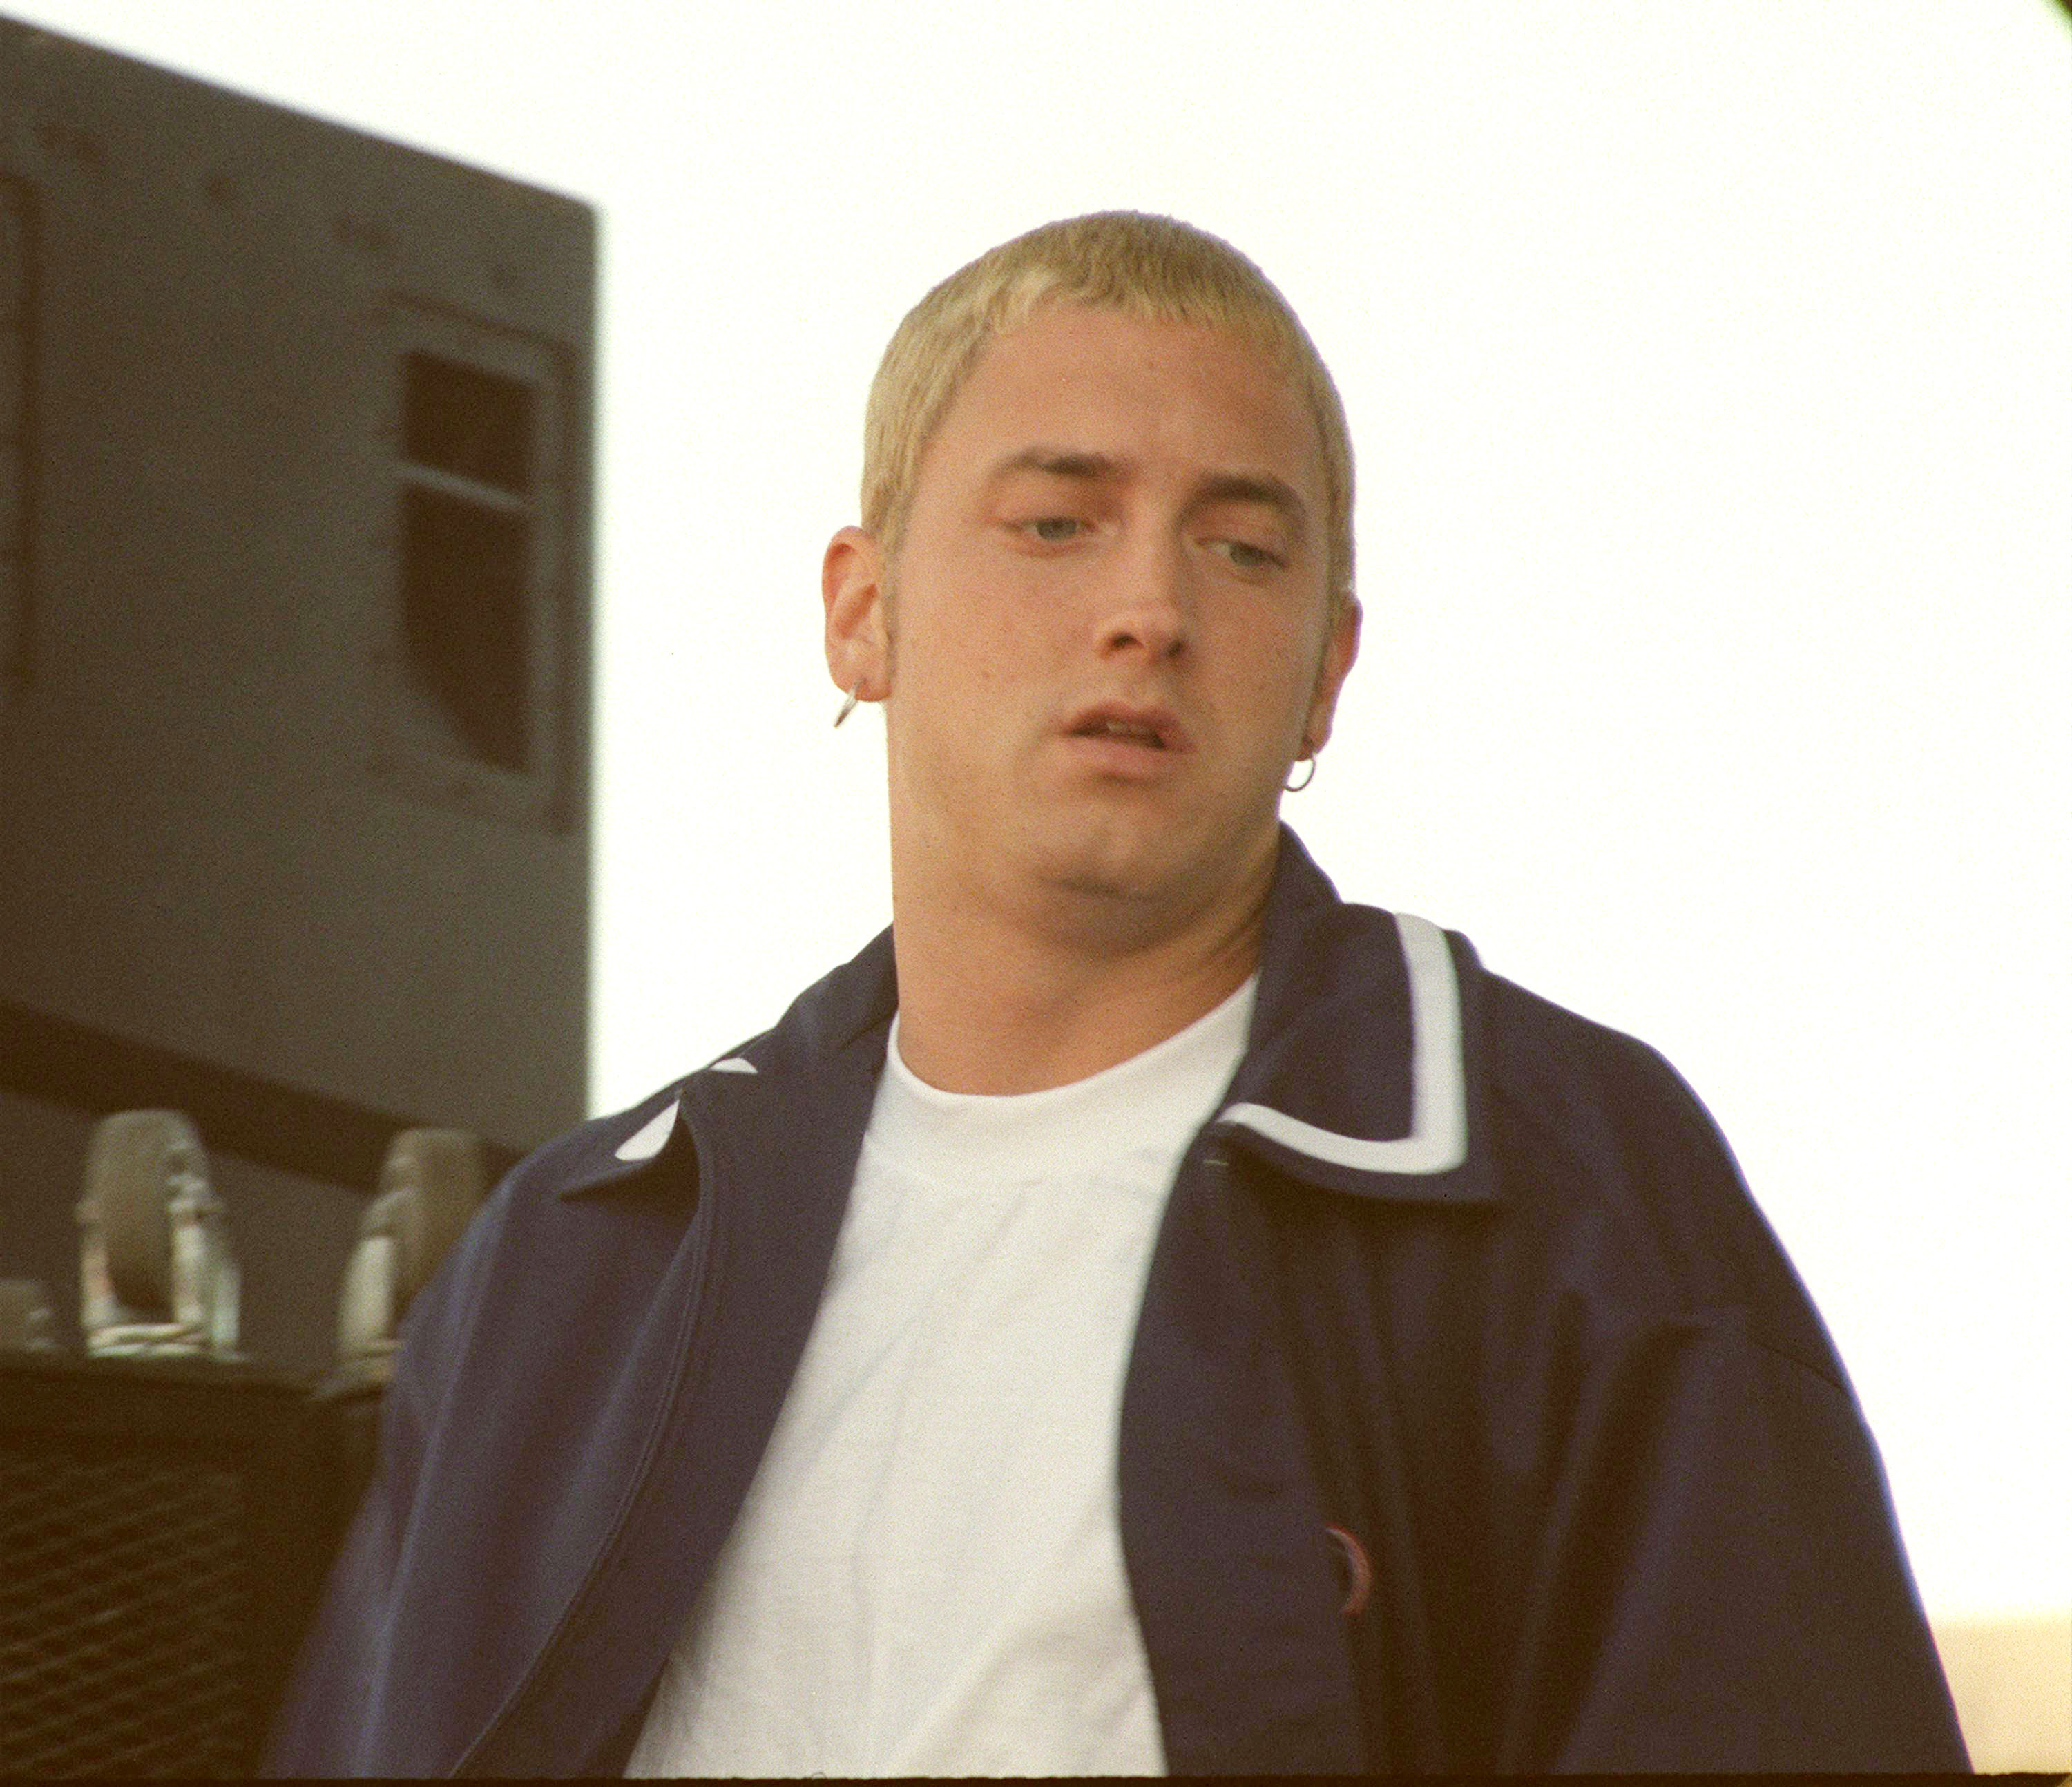 Eminem actuando en un espectáculo en Oakland, California, el 3 de julio de 1999 | Fuente: Getty Images